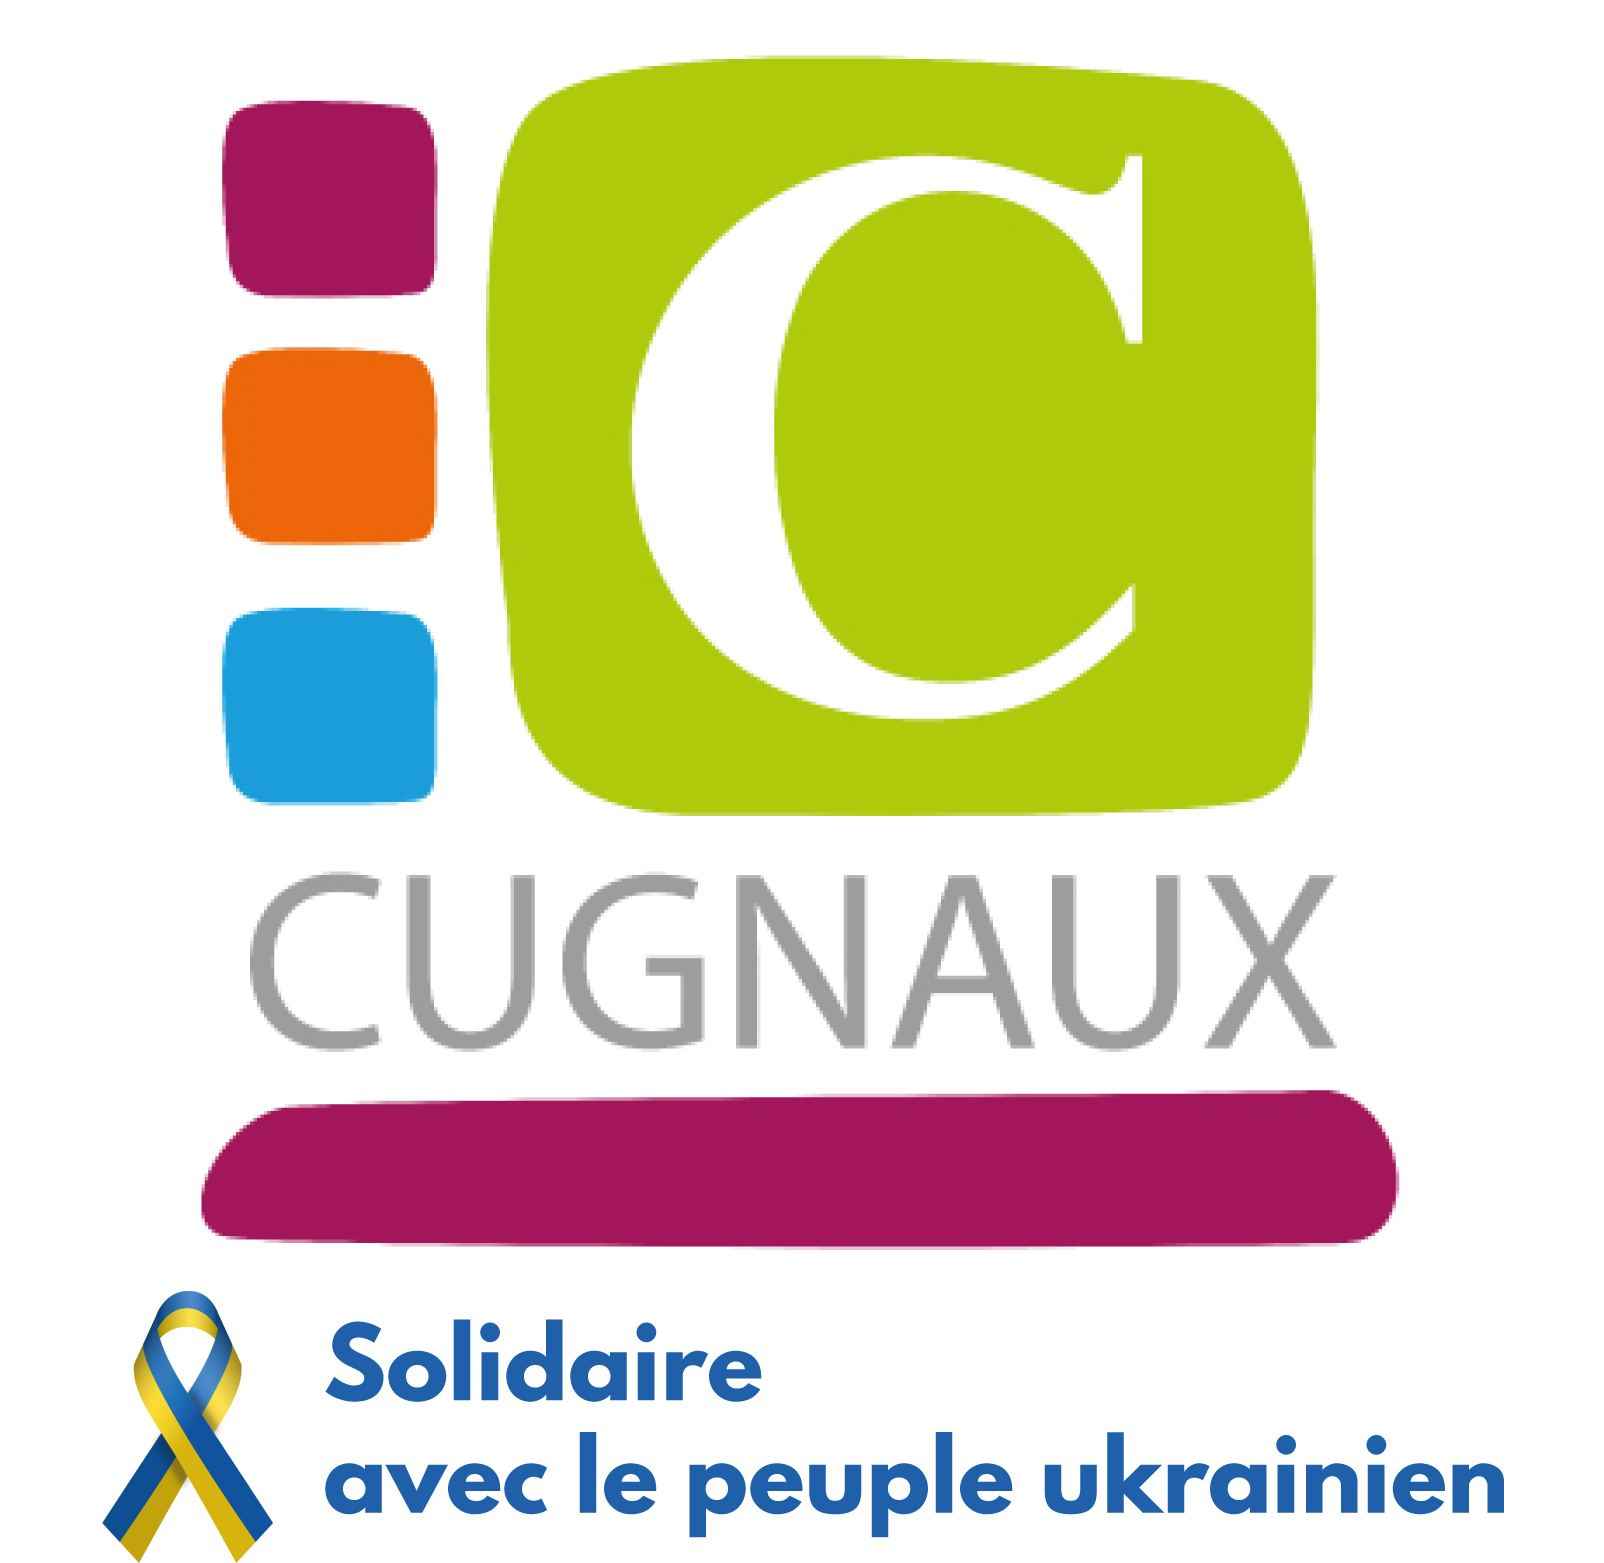 Ville de Cugnaux - site officiel